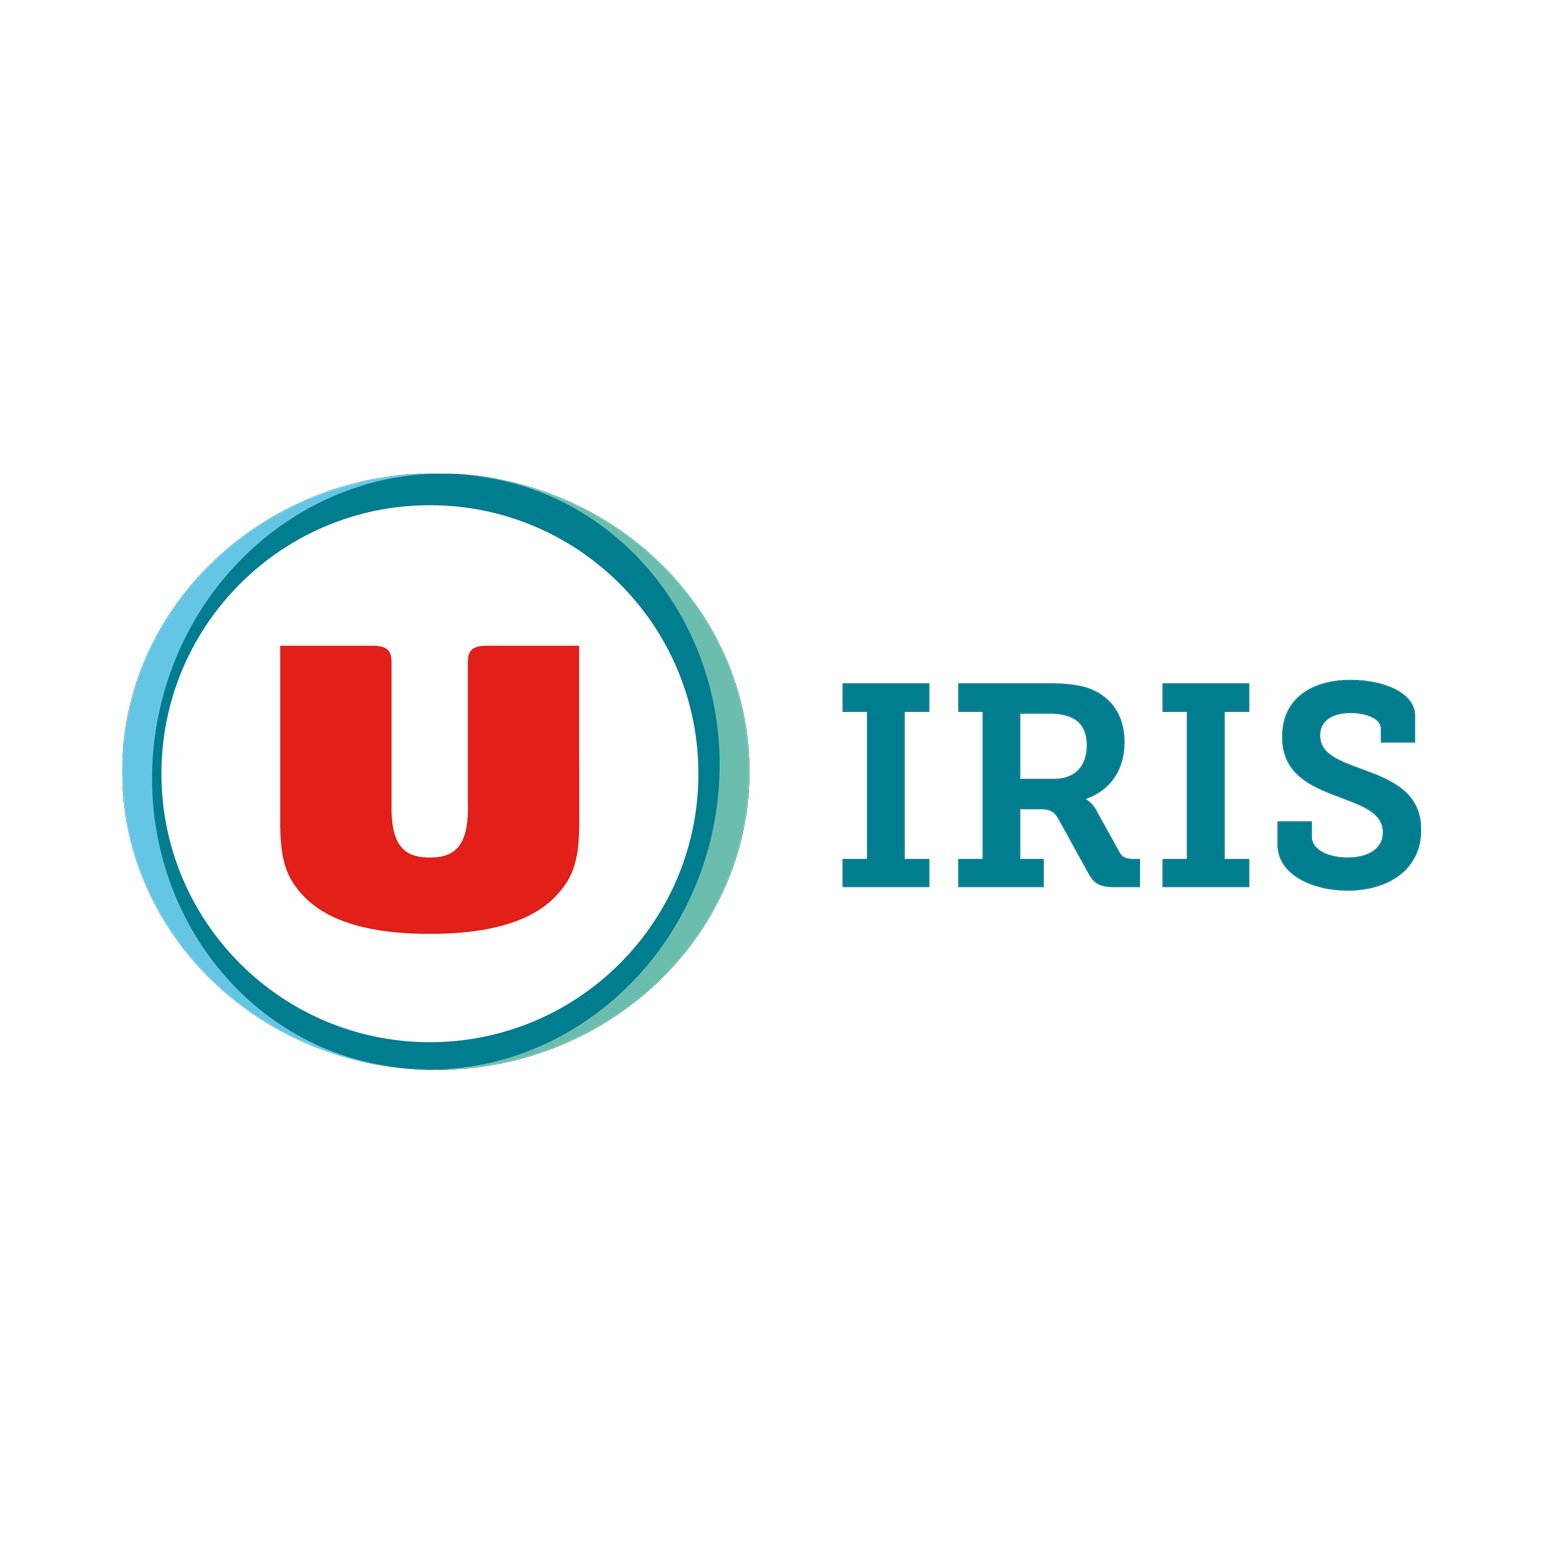 U-IRIS